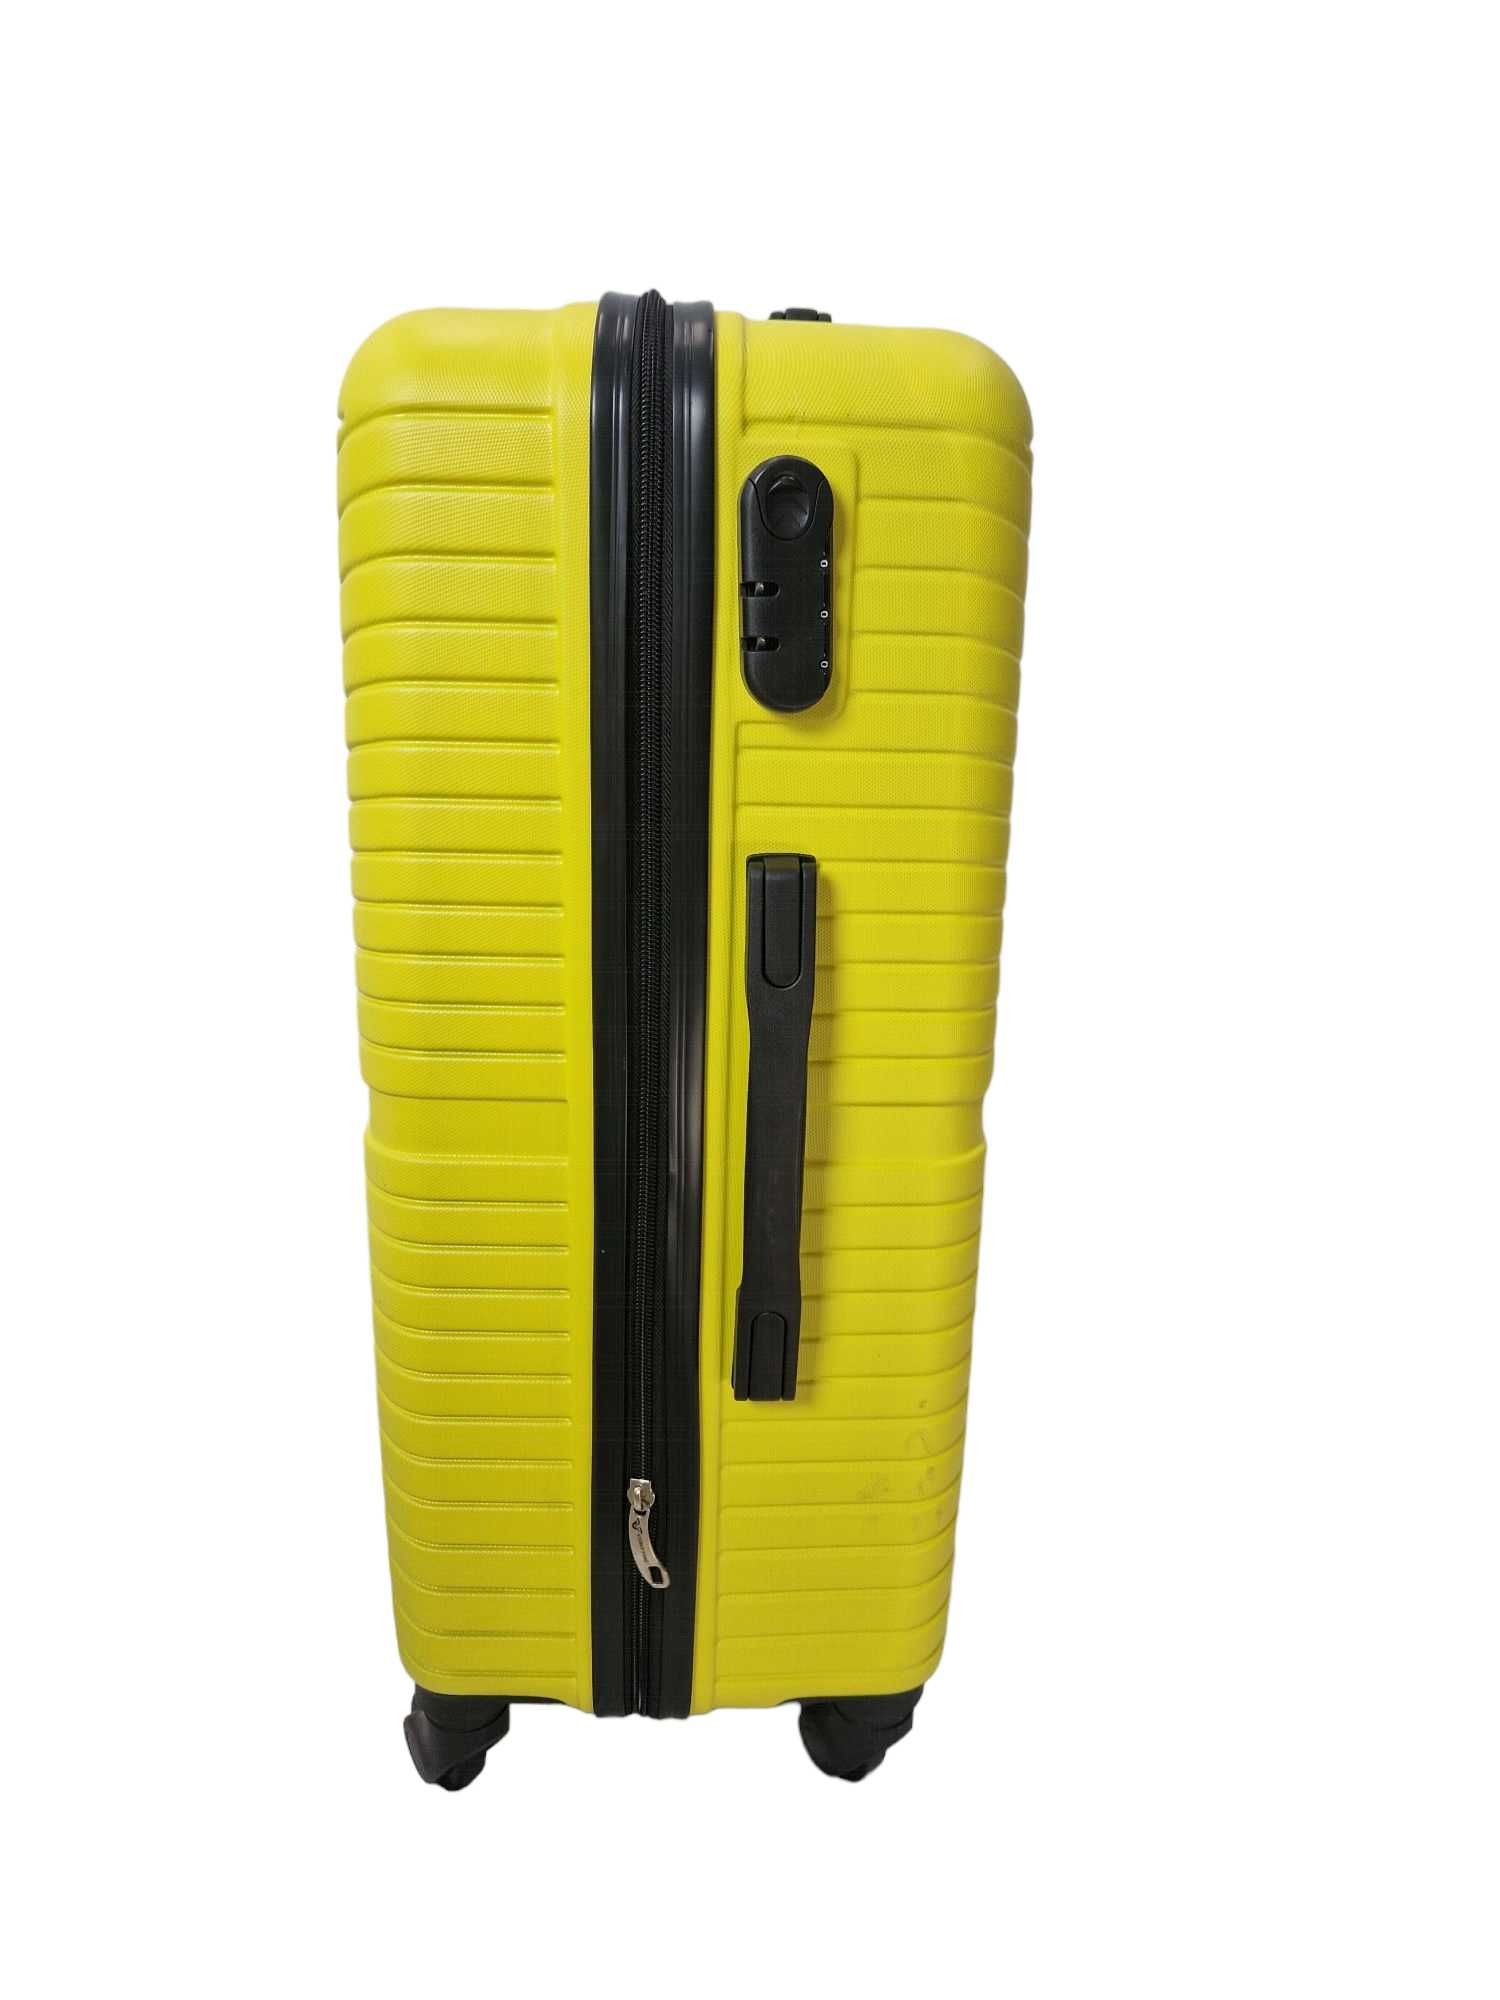 Walizka mała kabinowa podręczna ABS podróżna bagaż na 4 kółkach żółta